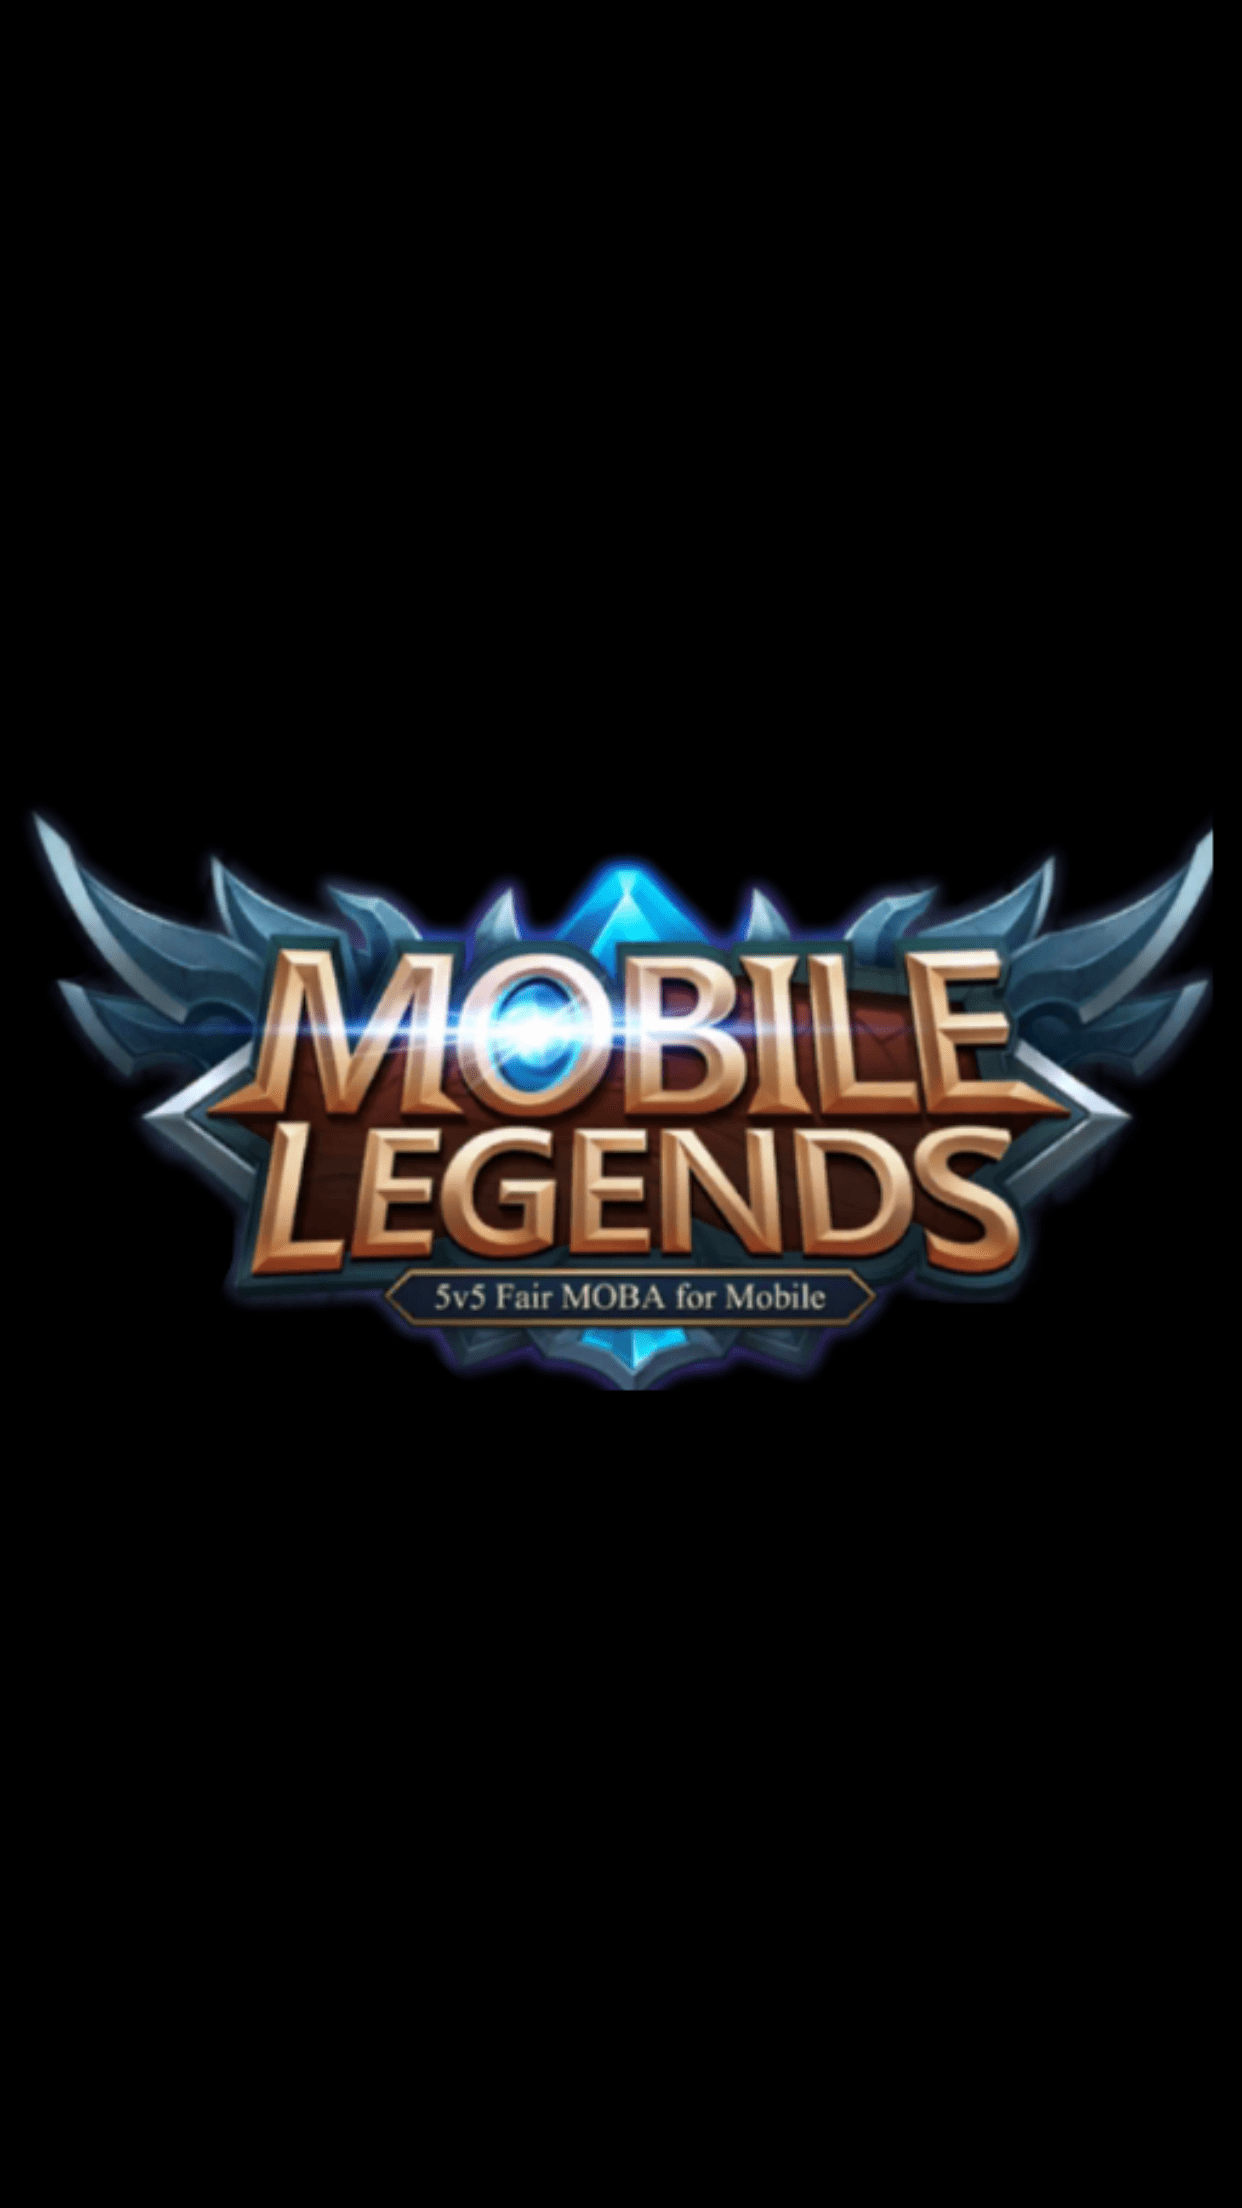 Mobile Legends Logo Wallpapers - Top Những Hình Ảnh Đẹp